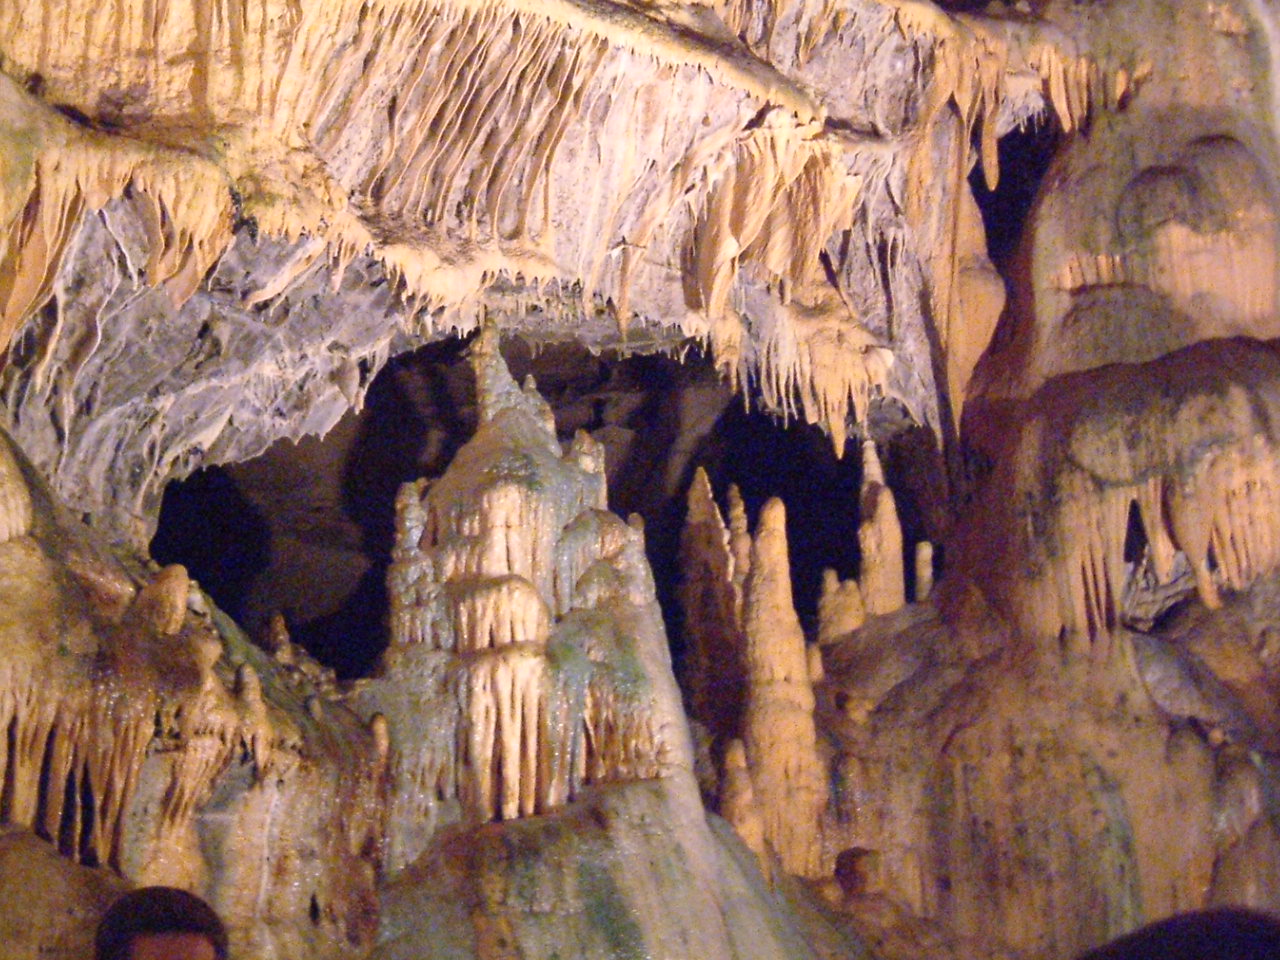 Les Grottes de Baume